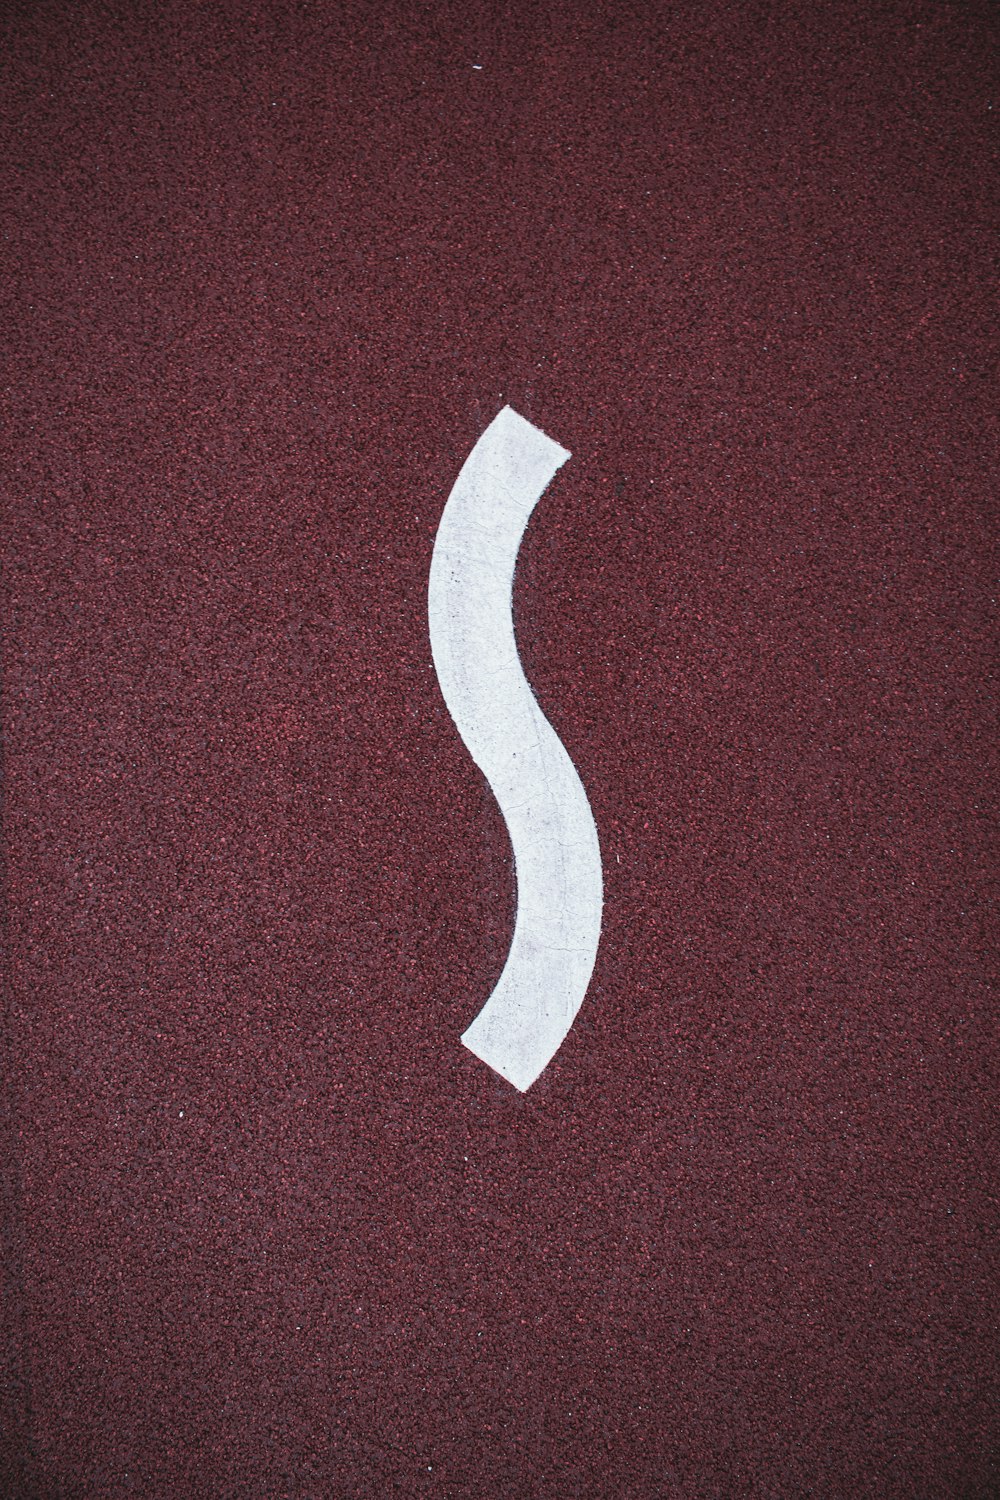 uma imagem de uma letra branca s em uma superfície vermelha